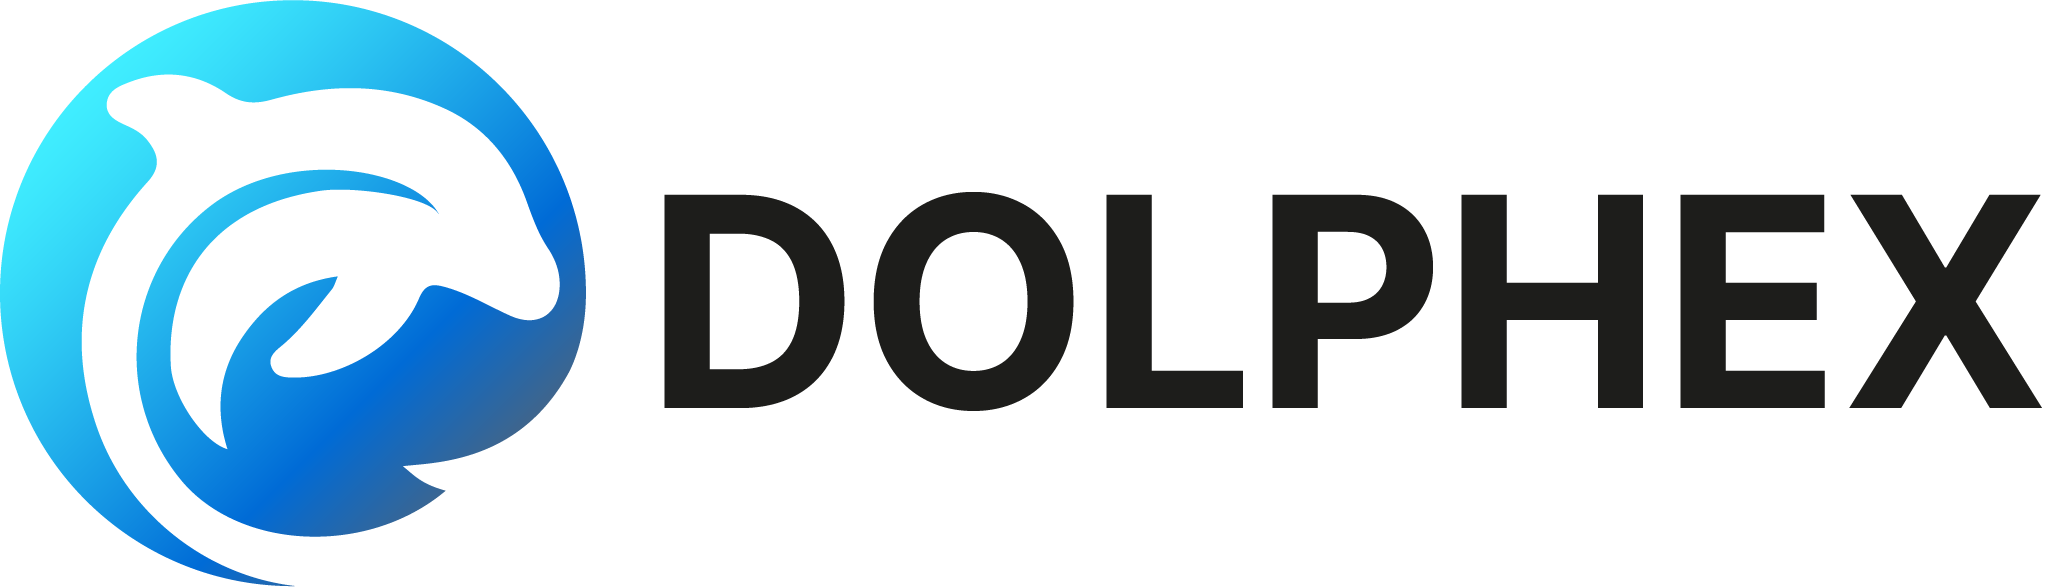 dolphex logo